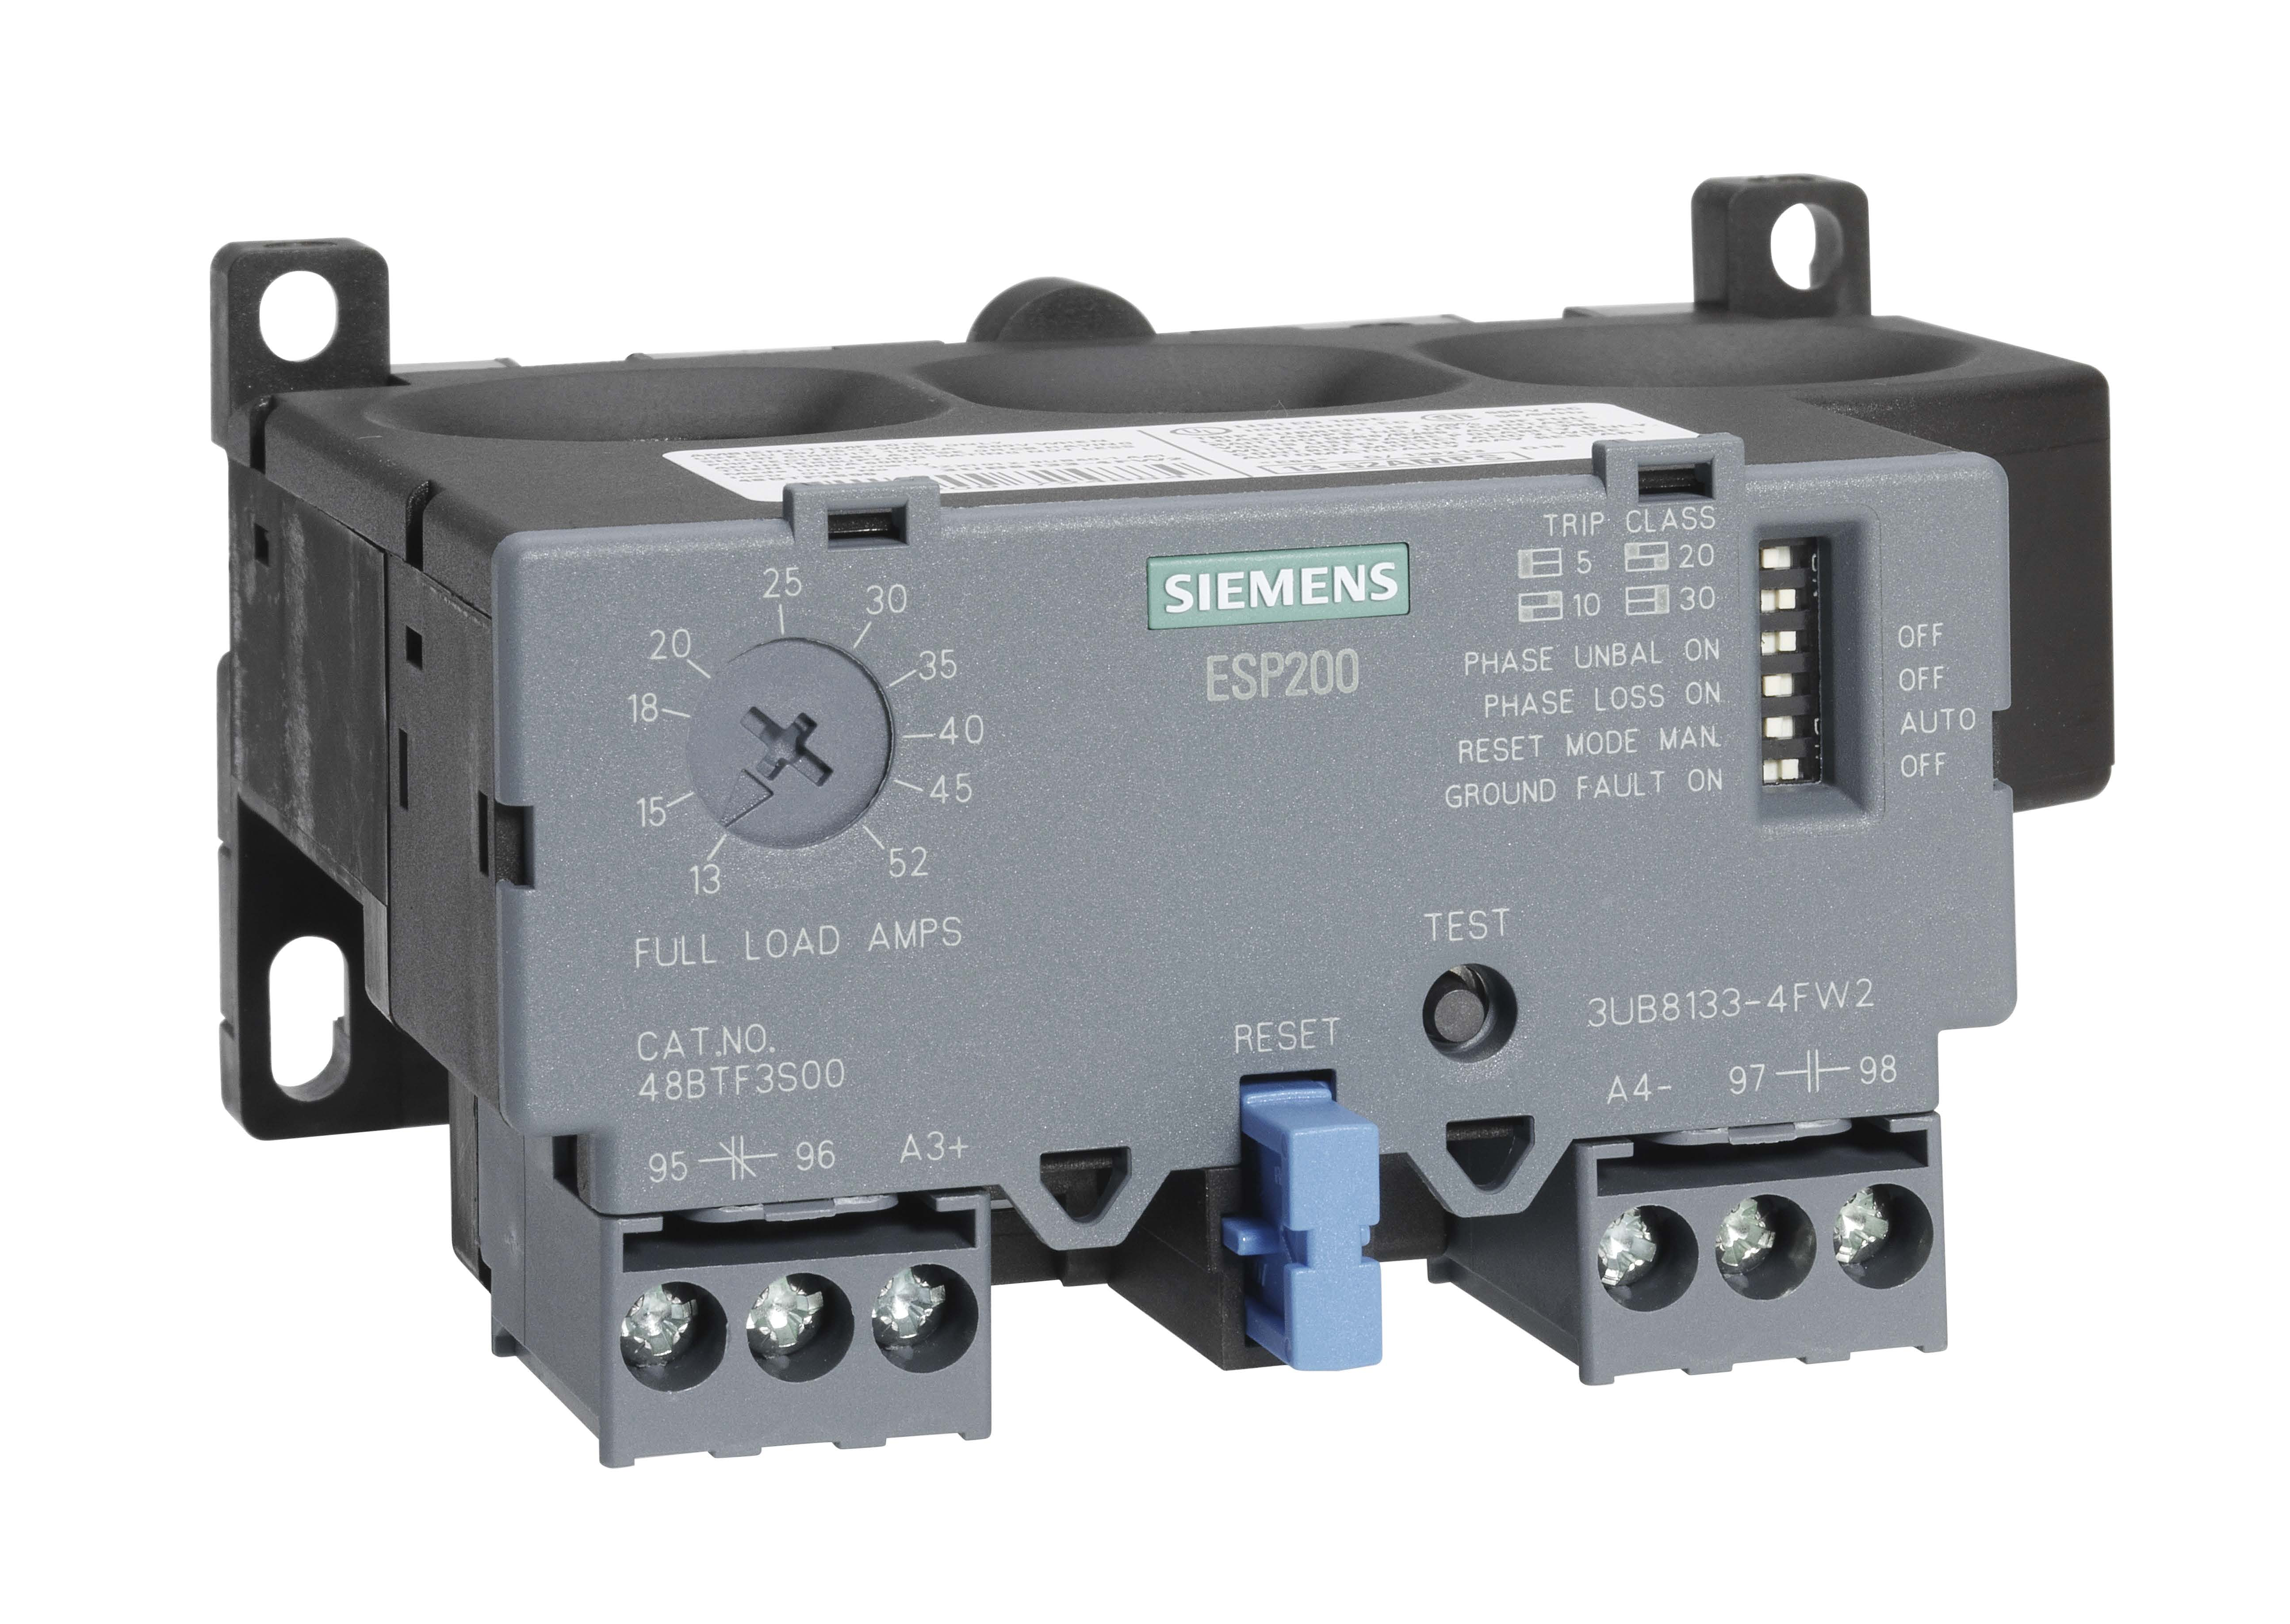 Siemens Controls 3UB81334FW2 3UB81334FW2: Siemens Controls OVERLOAD RELAY,13-52AMPS,3PH,ESP200 https://gesrepair.com/wp-content/uploads/2020/AB_Images/Siemens%20Controls_3UB81334FW2.jpg